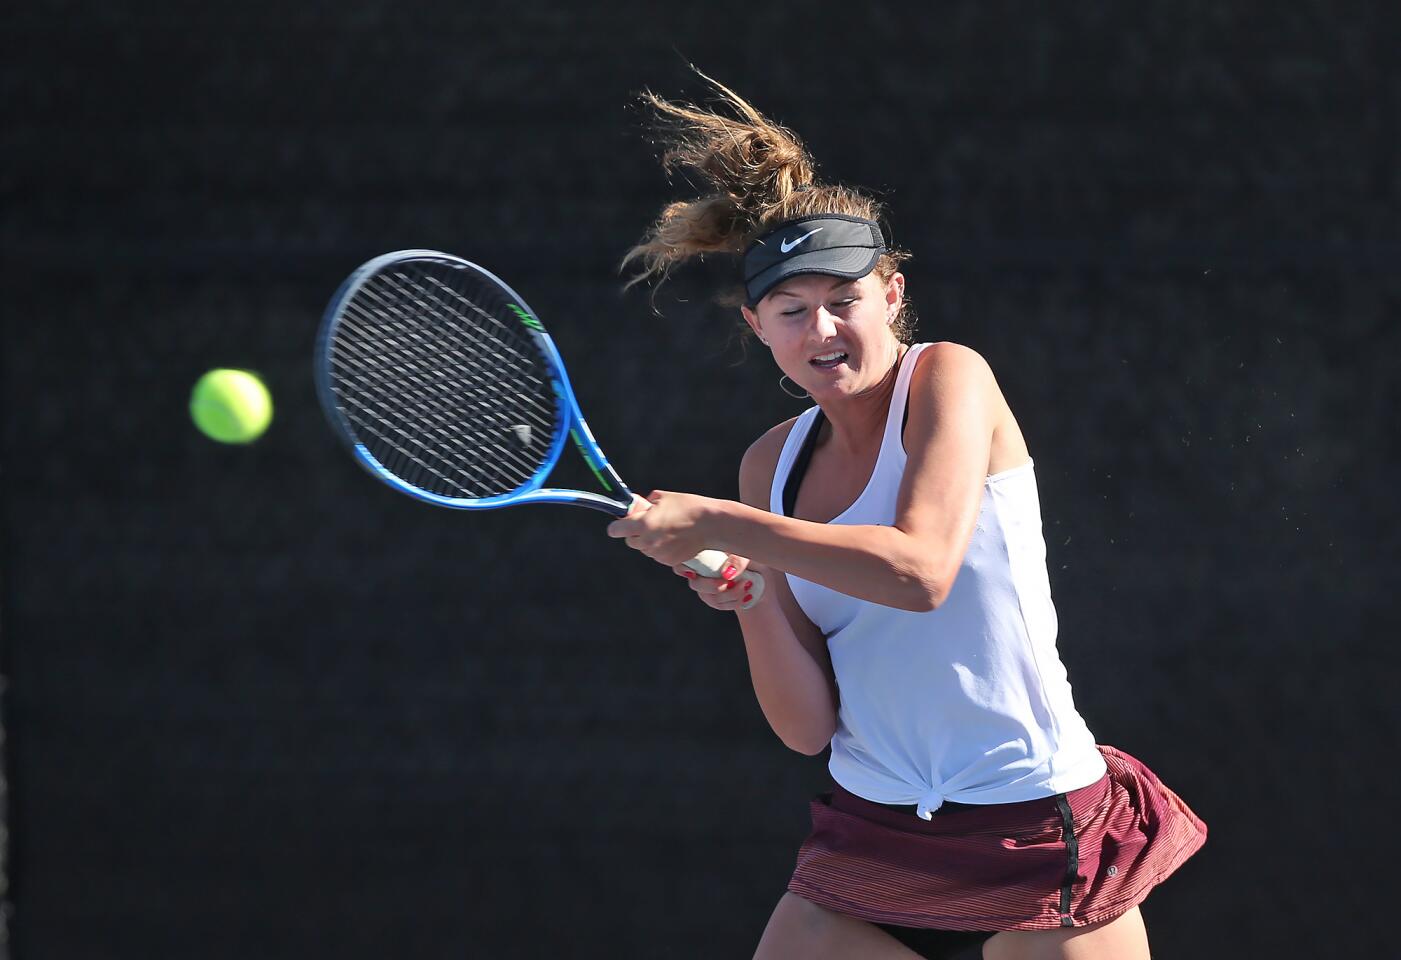 Laguna Beach High's Ella Pachl runs down a baseline shot in singles action of a Wave League tennis match on Tuesday.